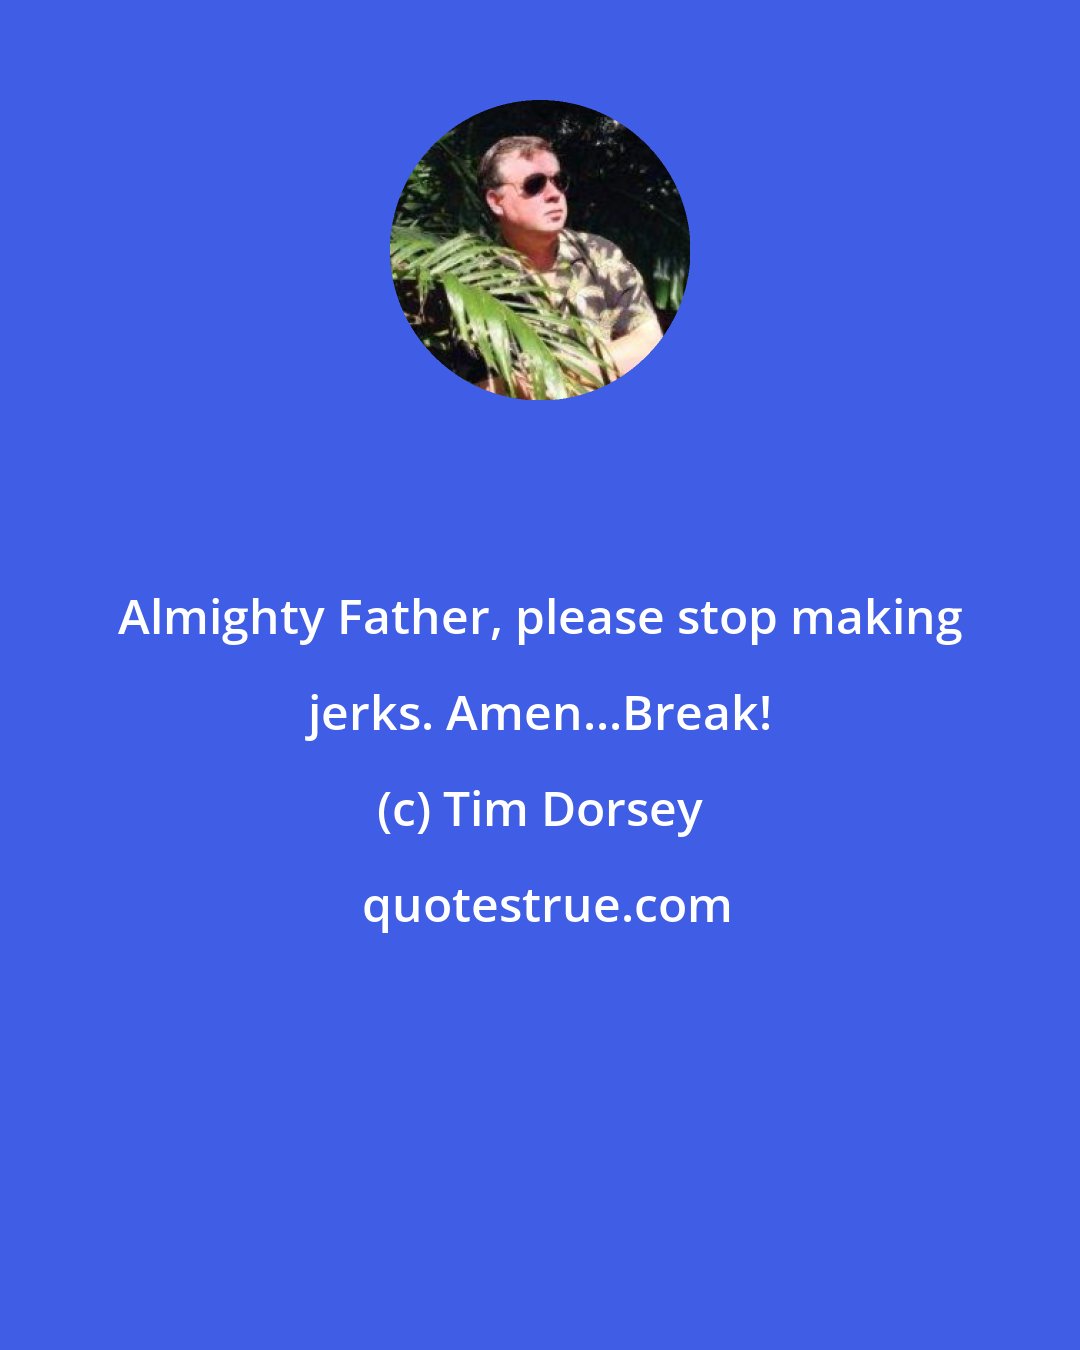 Tim Dorsey: Almighty Father, please stop making jerks. Amen...Break!